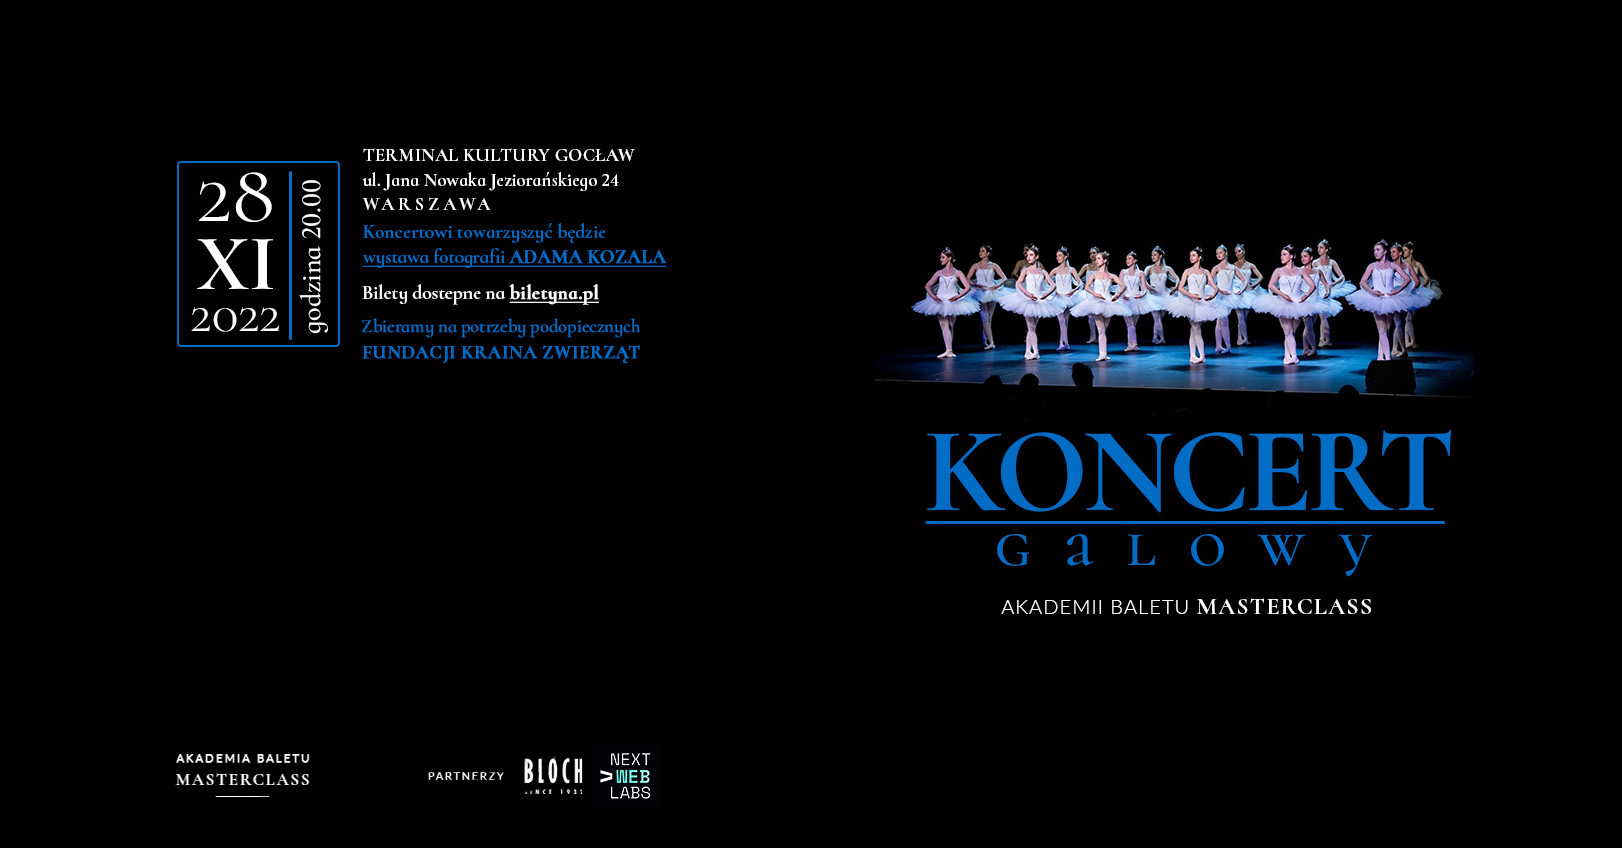 Koncert Galowy - Akademia Baletu Masterclass